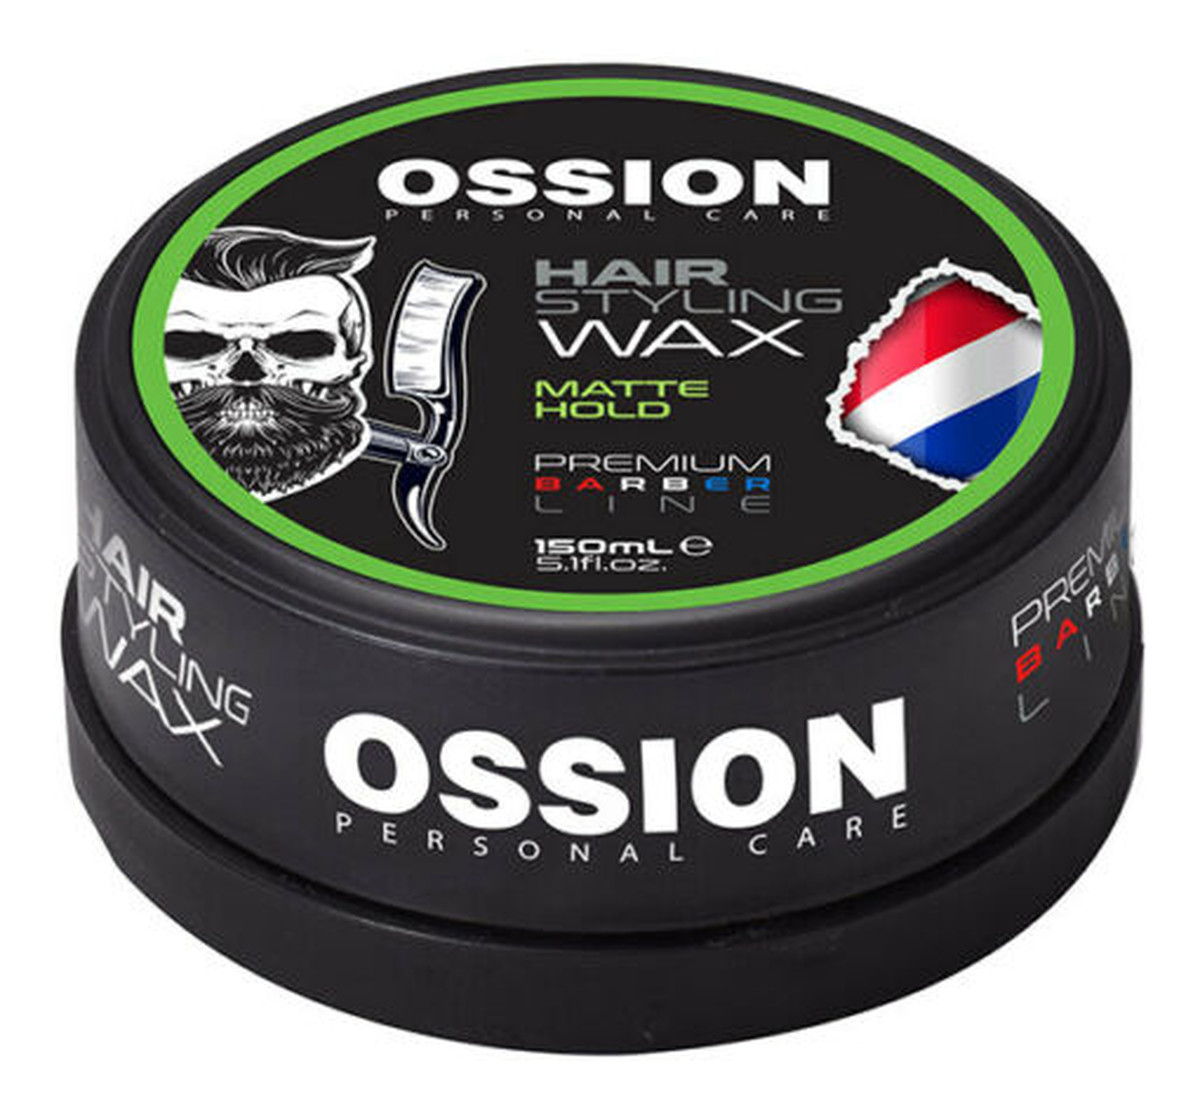 Ossion personal care hair styling wax wosk do stylizacji włosów matte hold